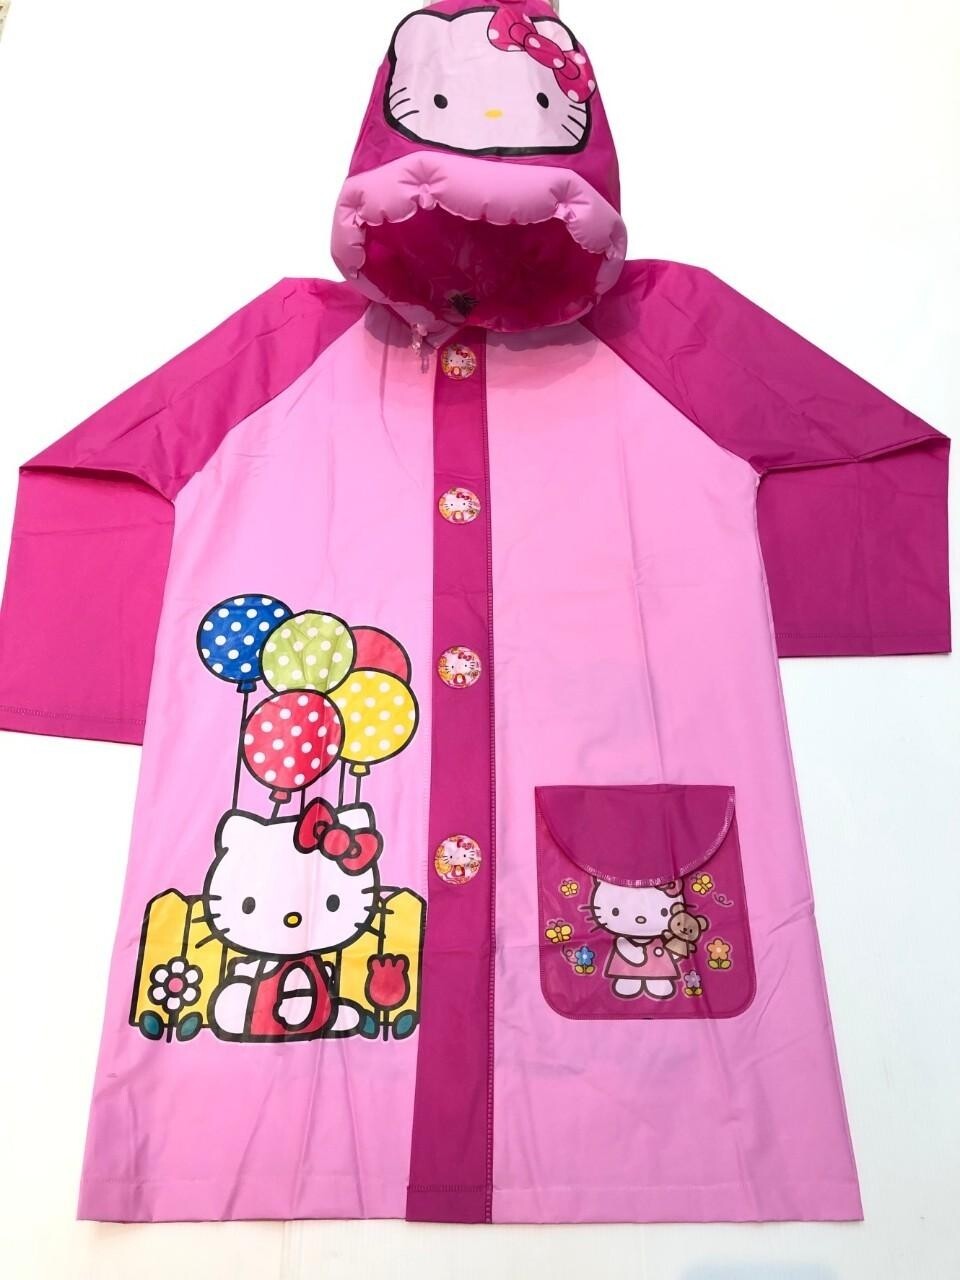 （พร้อมส่ง 🚚）เสื้อกันฝนเด็ก ชุดกันฝนเด็กรุ่นไม่ขยายหลัง เสื้อกันฝน ชุดกันน้ำ ลายการ์ตูน น่ารัก (ขนาด 100-130 CM)